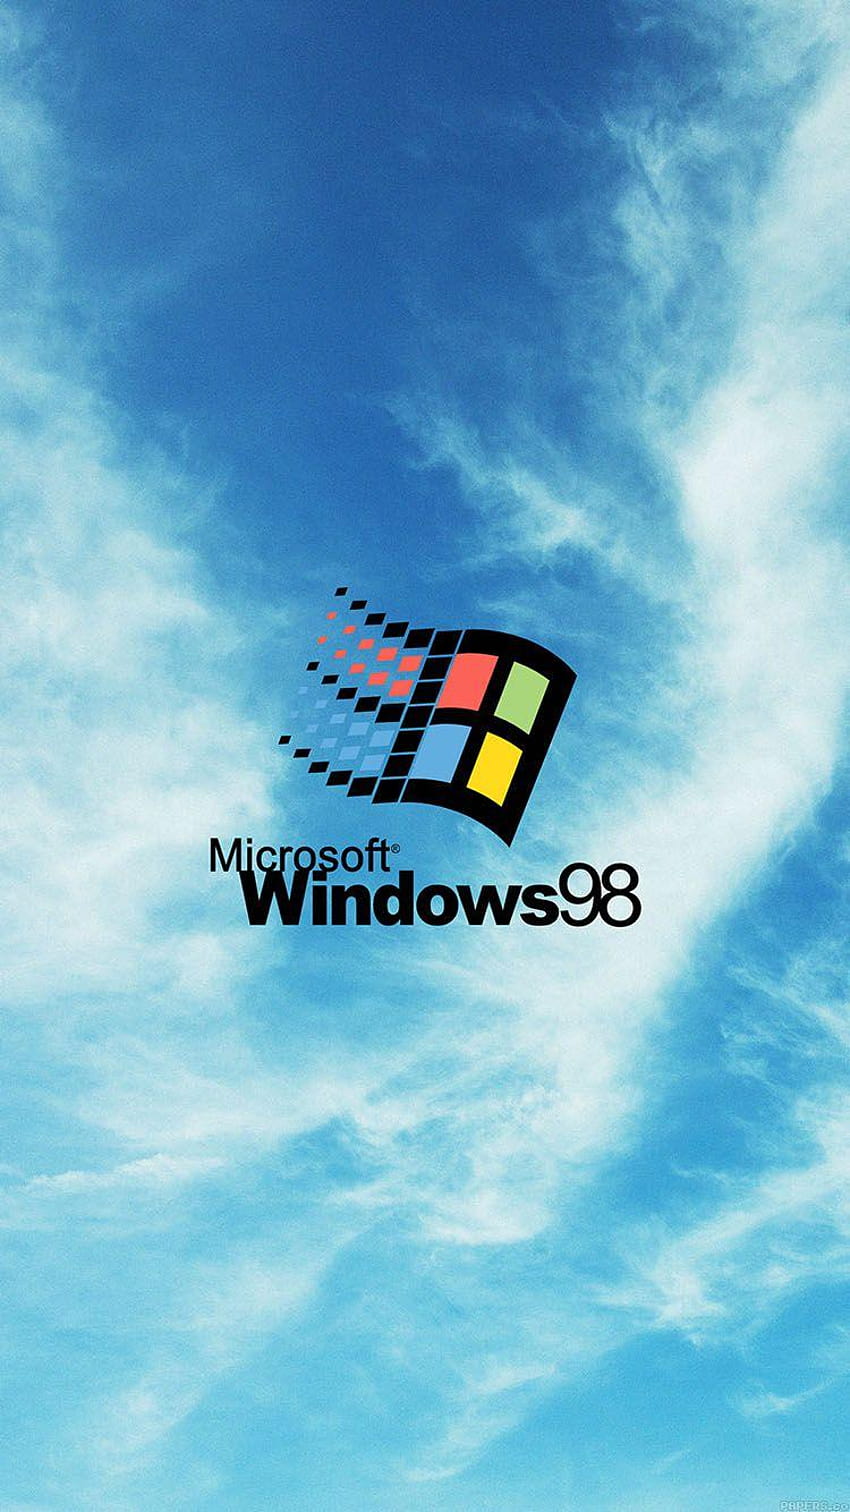 Chọn hình nền HD logo Windows 98 cho màn hình điện thoại của bạn để tạo nên sự khác biệt đầy tinh tế. Với trọng lượng lịch sử và ý nghĩa đặc biệt, hình nền này khiến cho chiếc điện thoại của bạn trở nên đẳng cấp và đầy phong cách. Hãy chọn hình nền này để khoe sự khác biệt của bạn nhé!